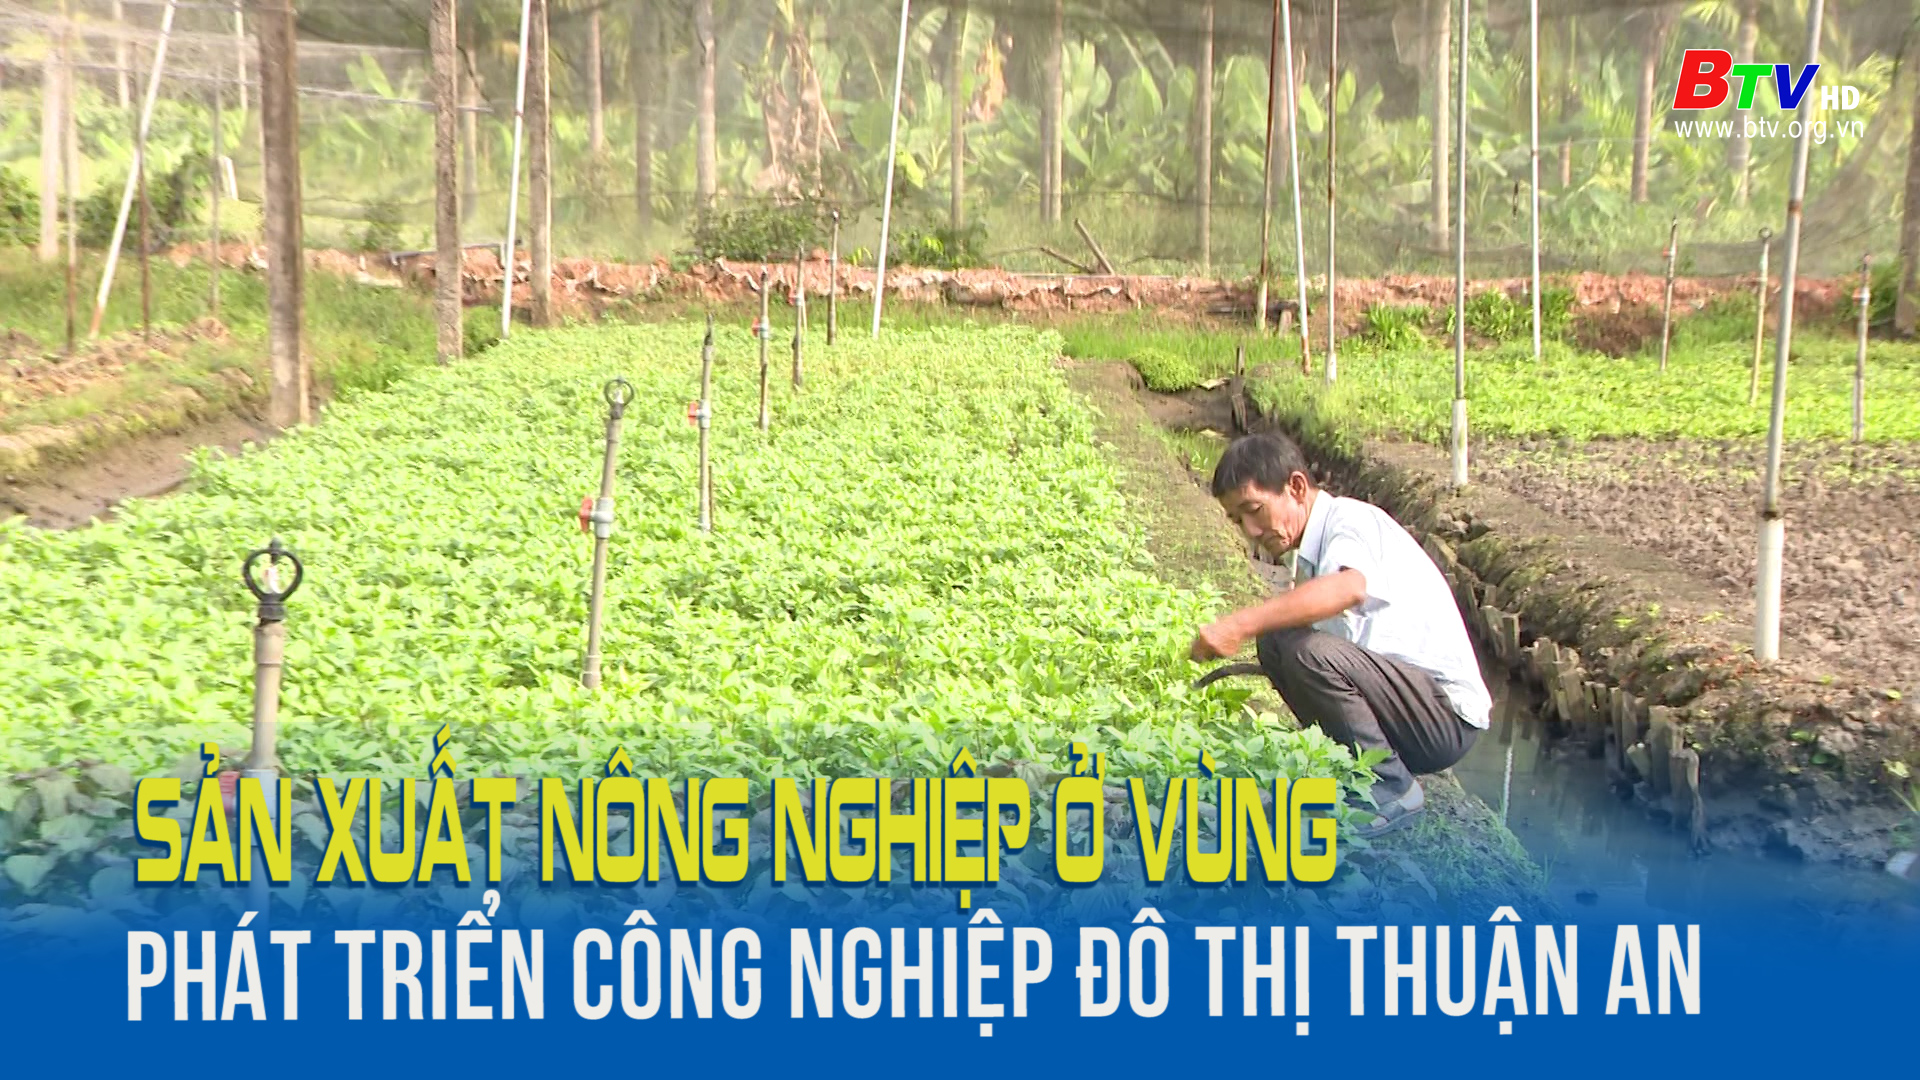 Sản xuất nông nghiệp ở vùng phát triển công nghiệp đô thị Thuận An